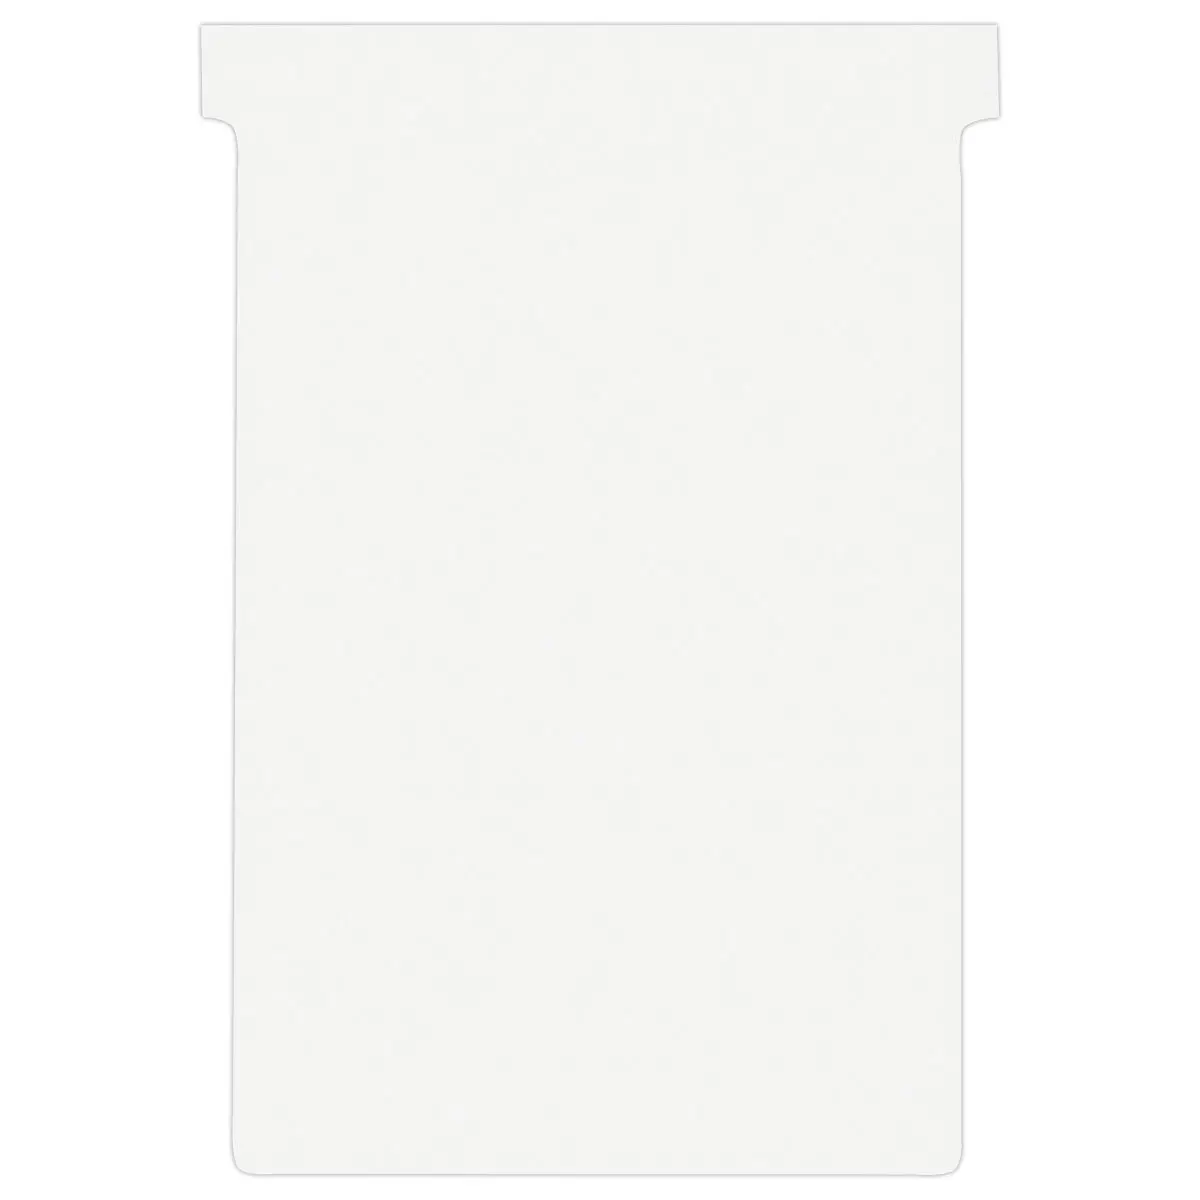 100 Fiches T pour planning - Taille 4 - Blanc - NOBO photo du produit